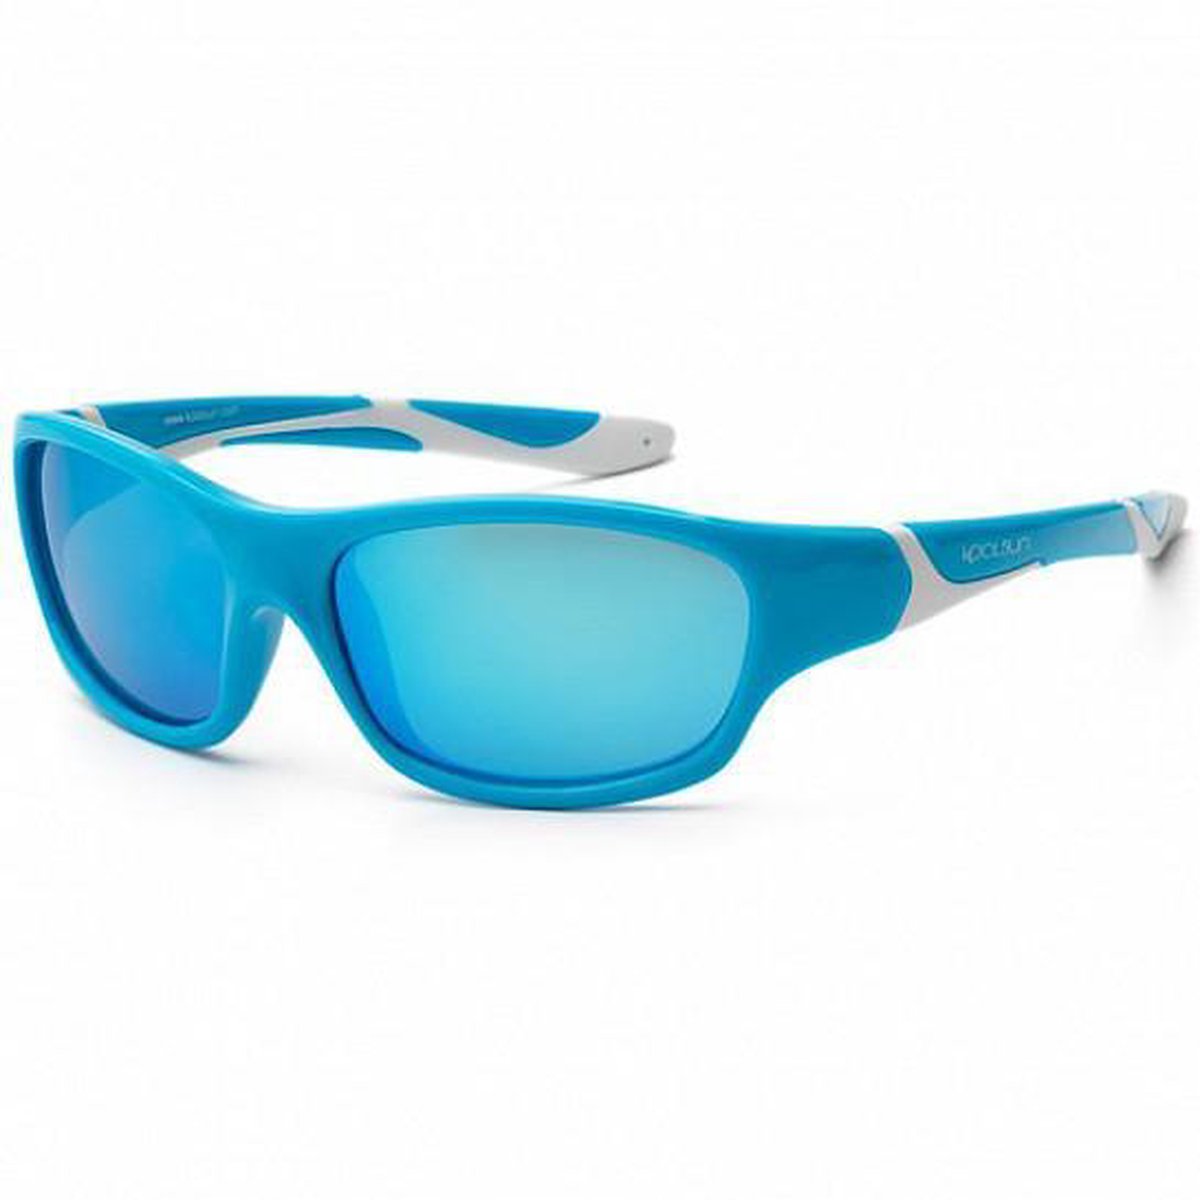 KOOLSUN - Sport - Kinder zonnebril - Aqua White - 3-8 jaar - UV400 - Categorie 3